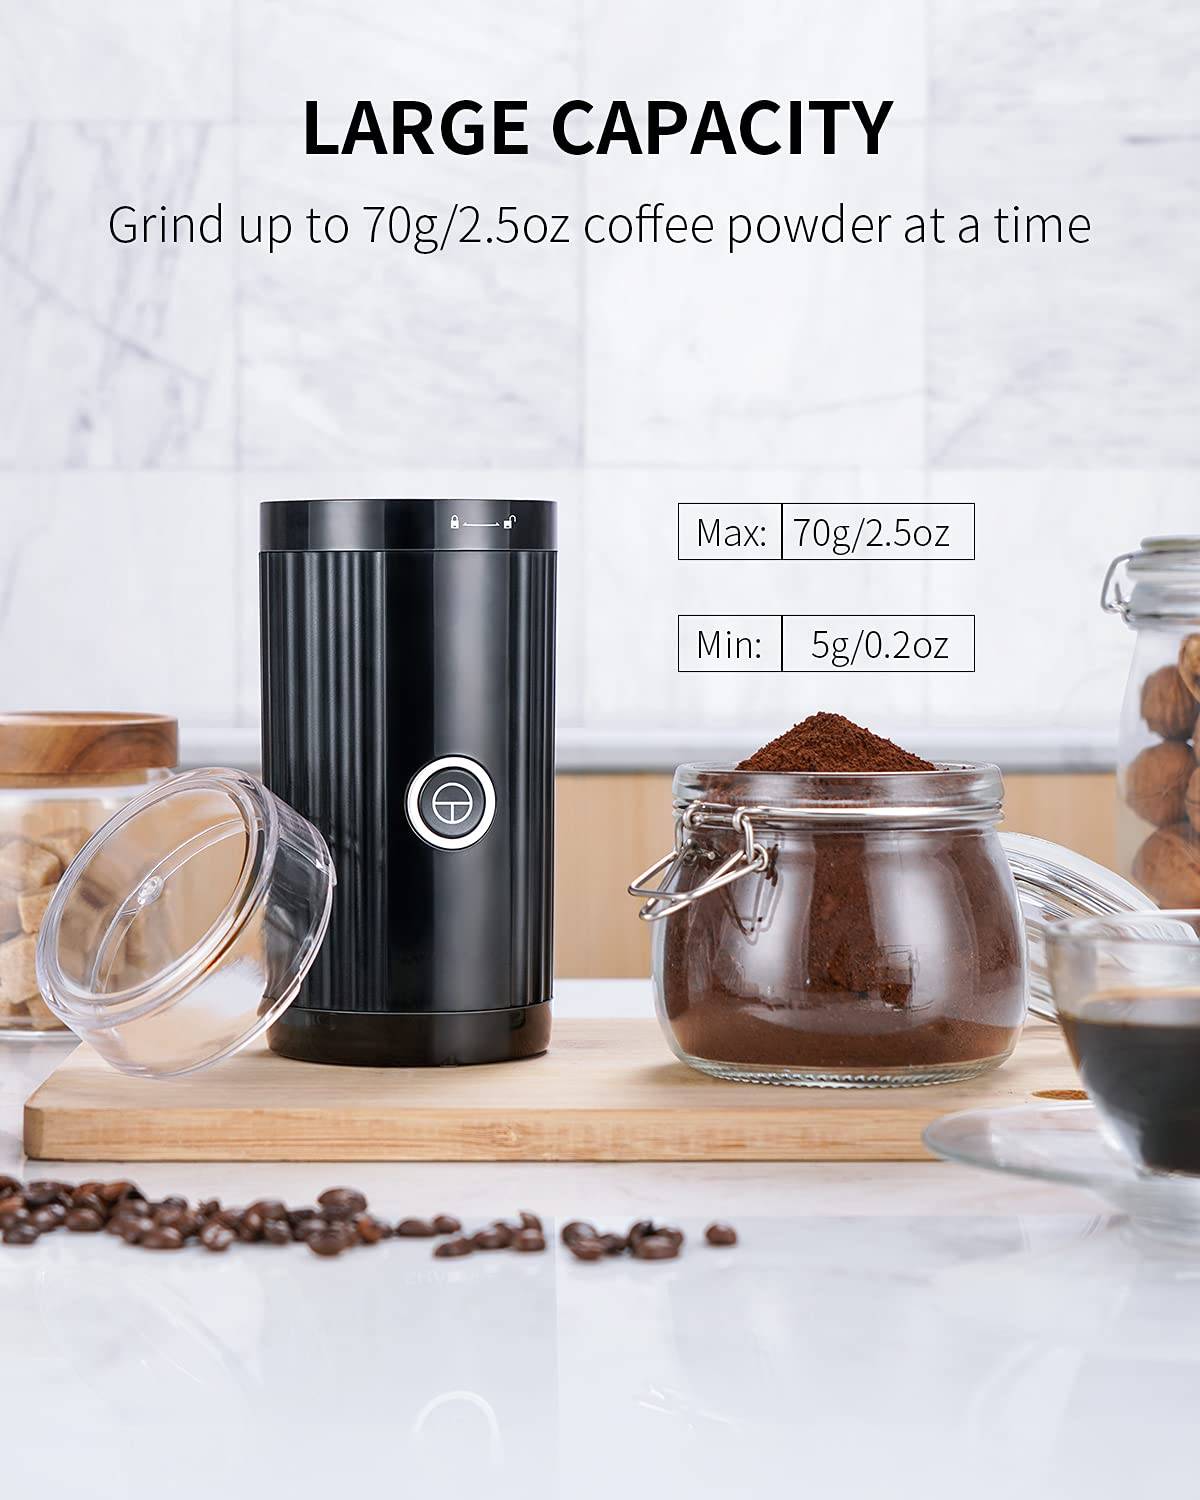 Blade coffee grinder